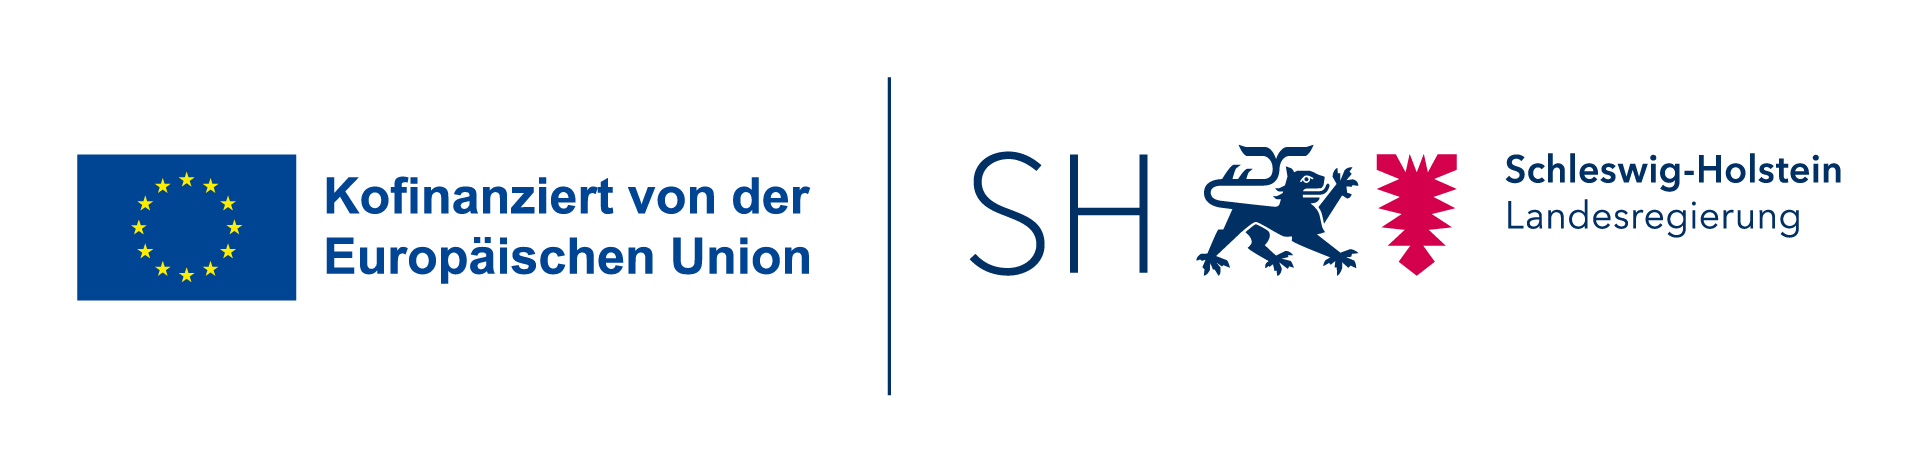 Logo-Banner der Geldgeber für das Dock1. Logo-Banner enthält Flage der EU mit Schriftzug "Kofinaniziert von der Europäischen Union und das Wappen von Schleswig -Holstein mit dem Schriftzug "Schleswig-Holstein Landesregierung"